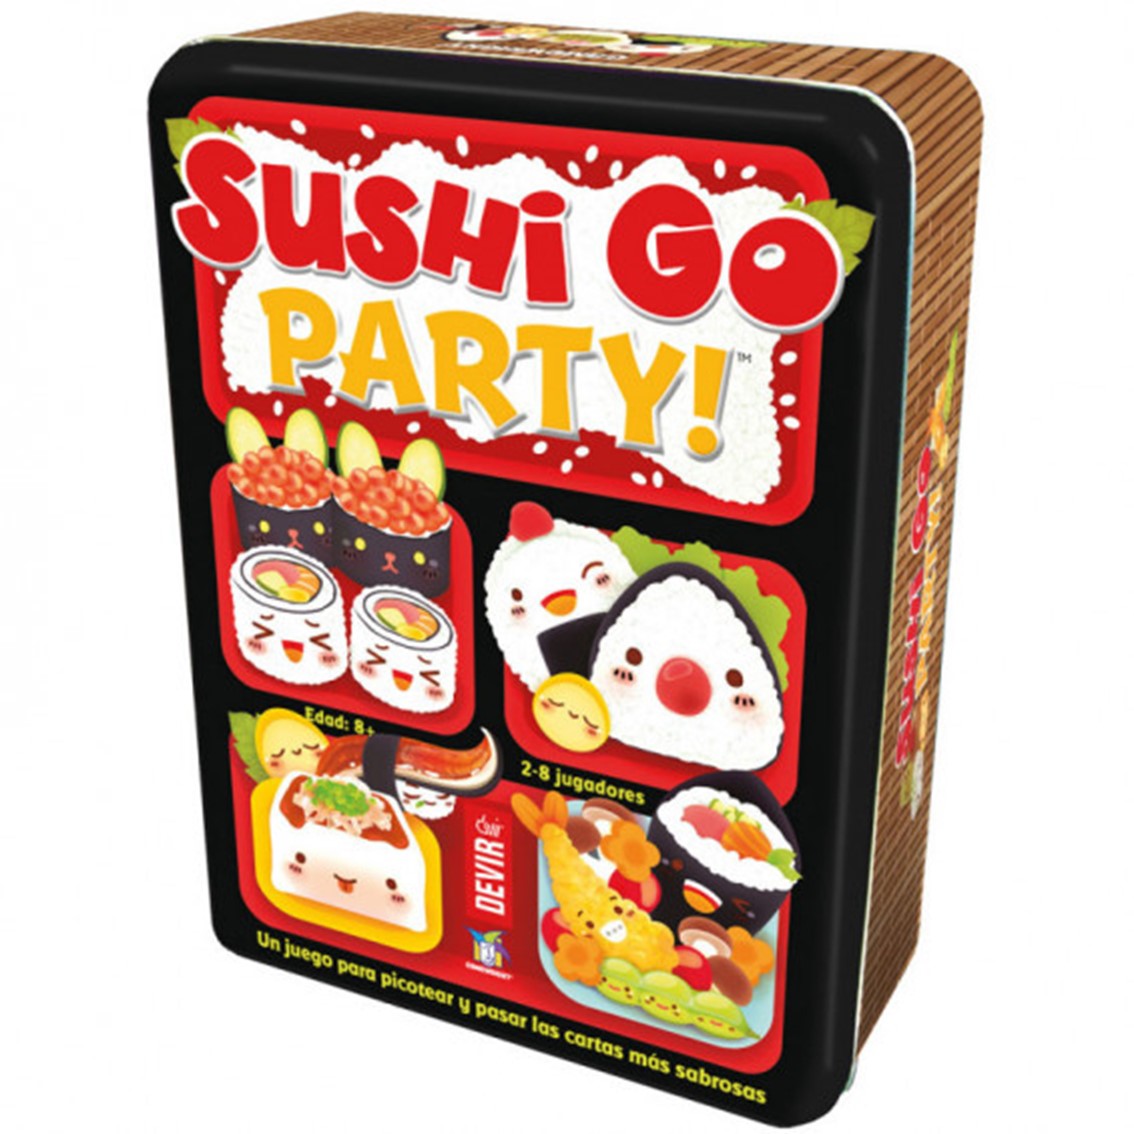 Jeu de société Sushi Go Party - Thème Gastronomie/Oriental - De 2 à 8 joueurs - A partir de 8 ans - Durée 20min. environ.